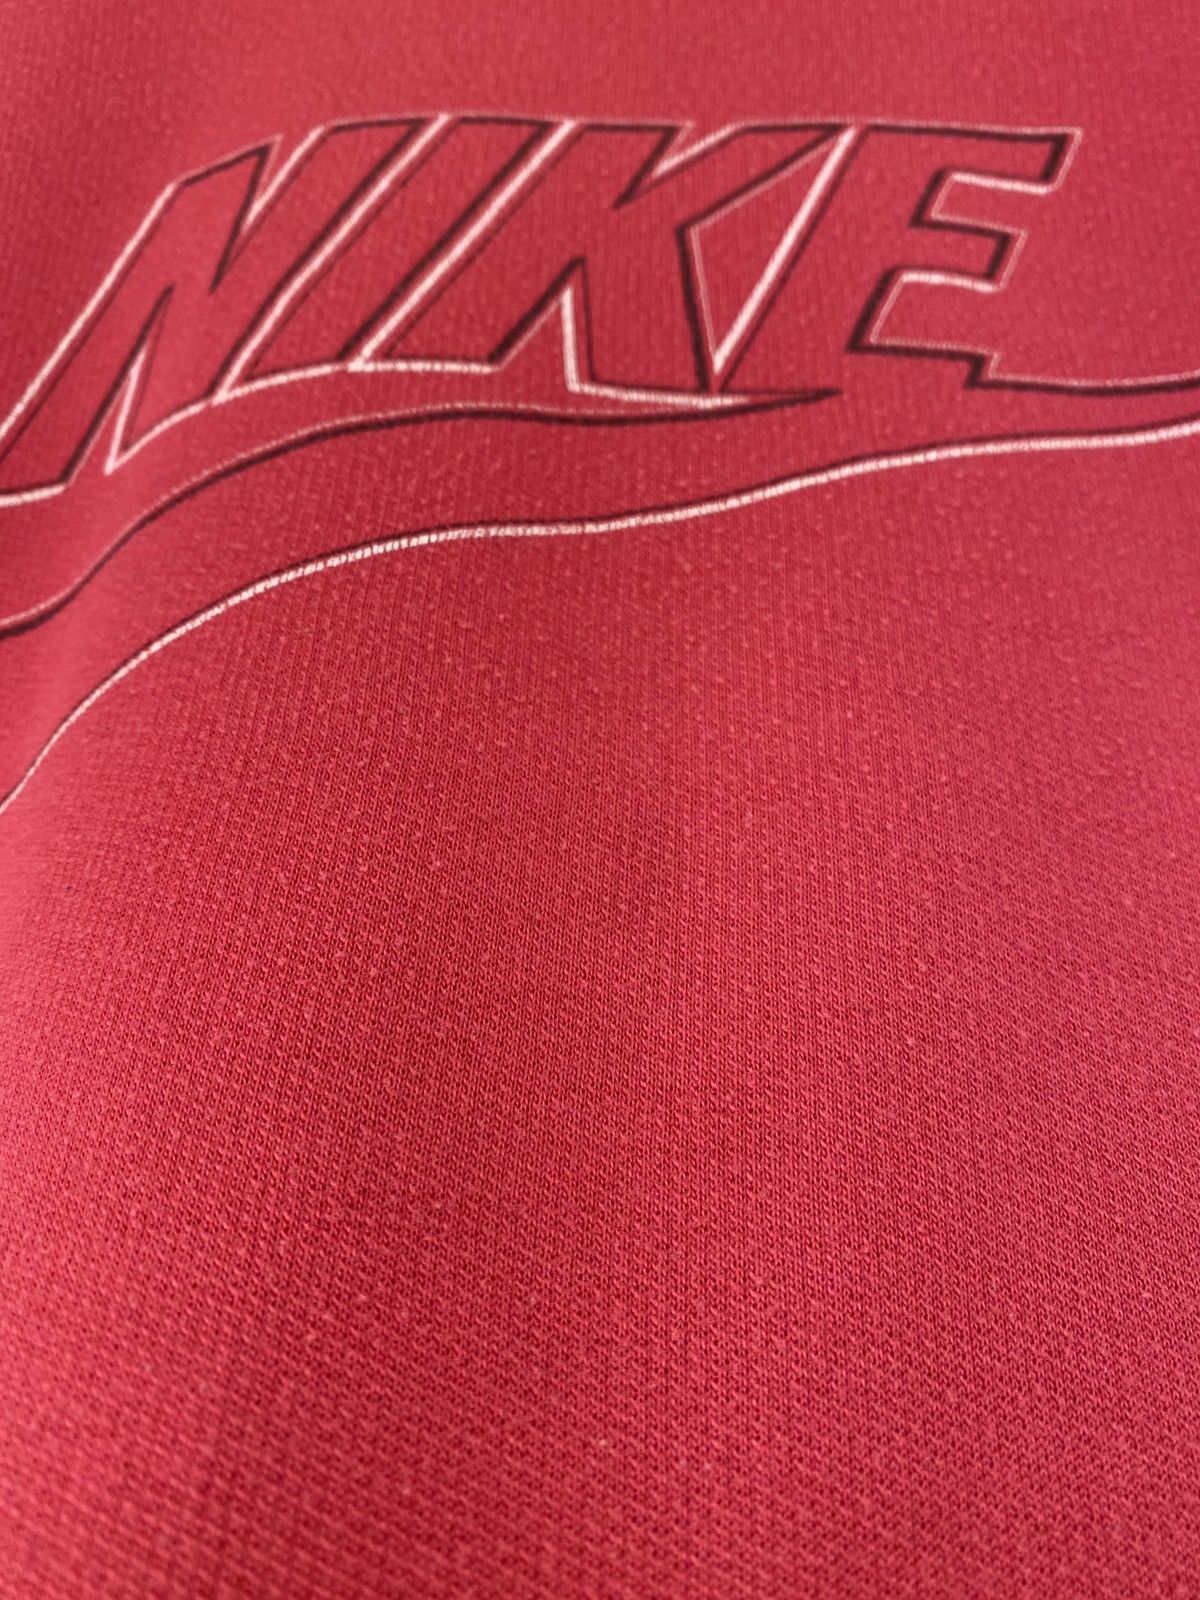 80s Nike Blue Tag Sweatshirt - 4